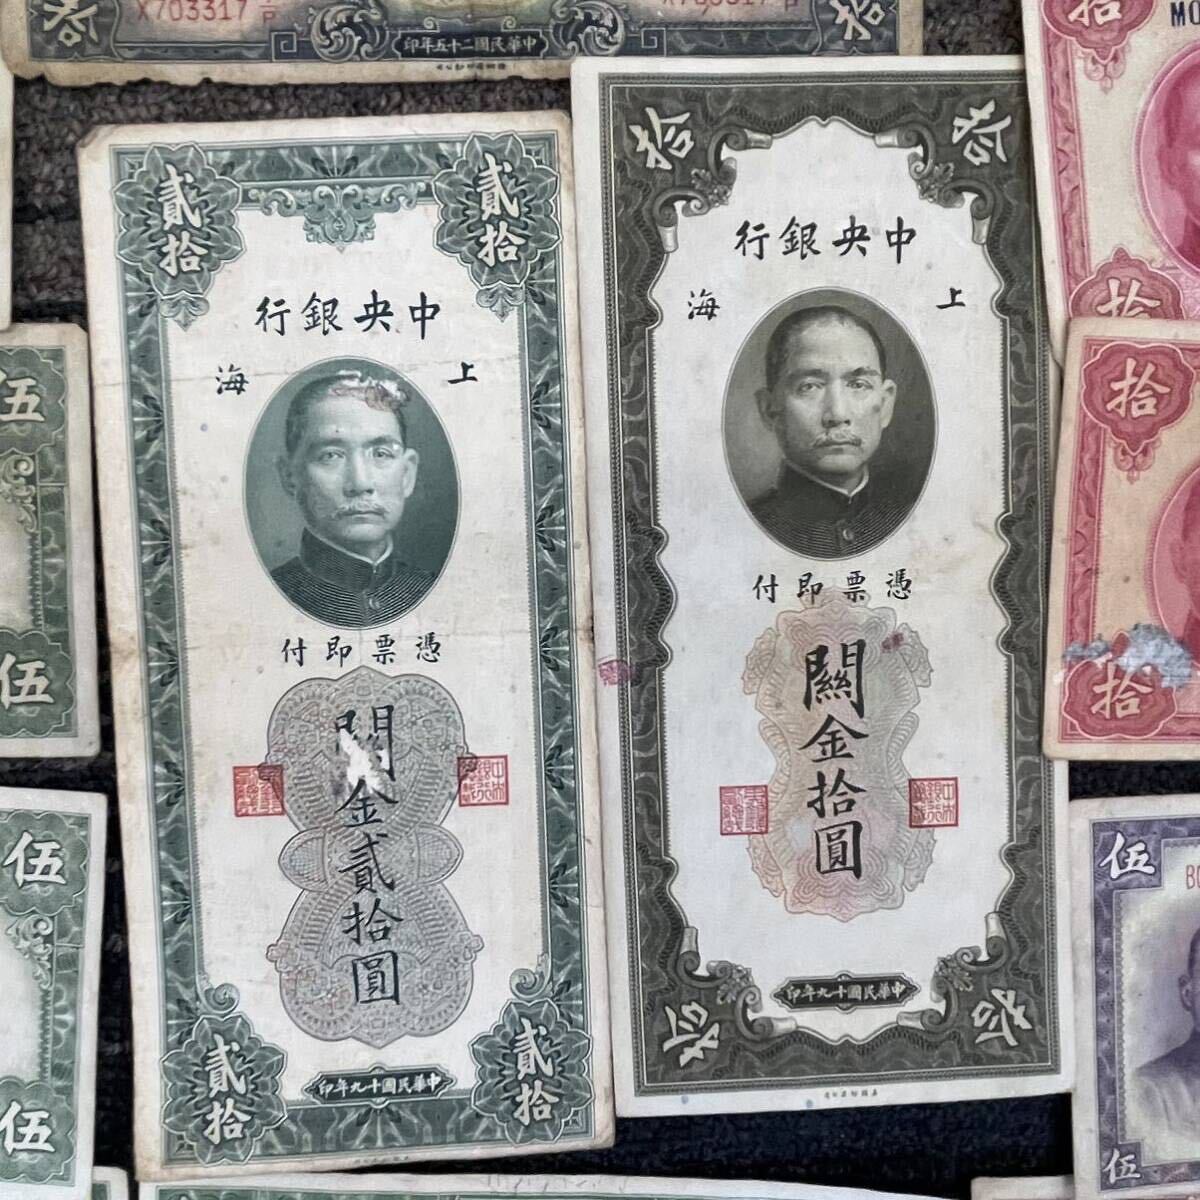 [TH0512] China банкноты суммировать 22 листов старая монета банкноты китайский Bank китайский Bank китайский человек . Bank вне . Азия ............